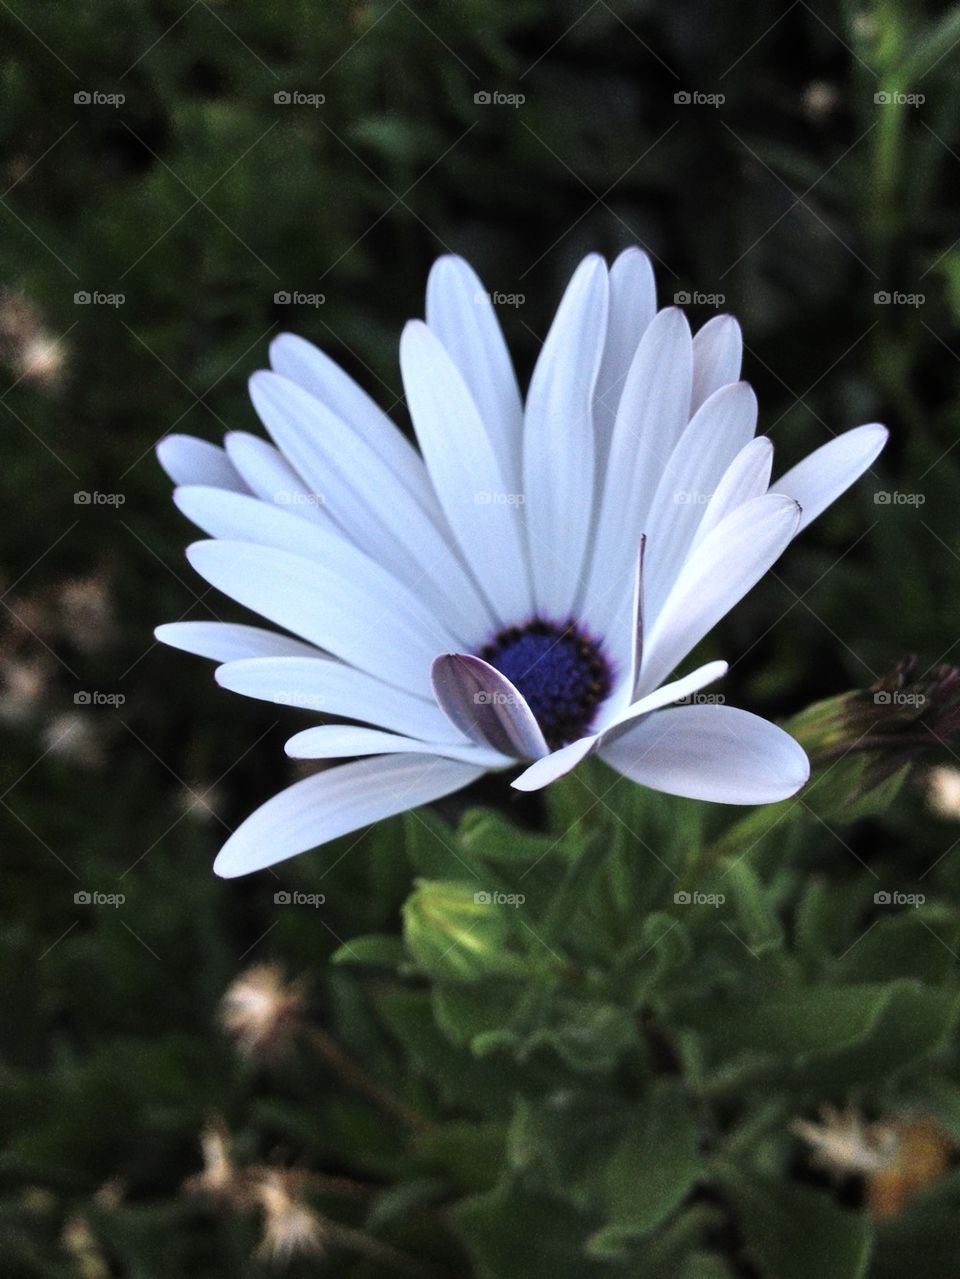 White flower in bloom